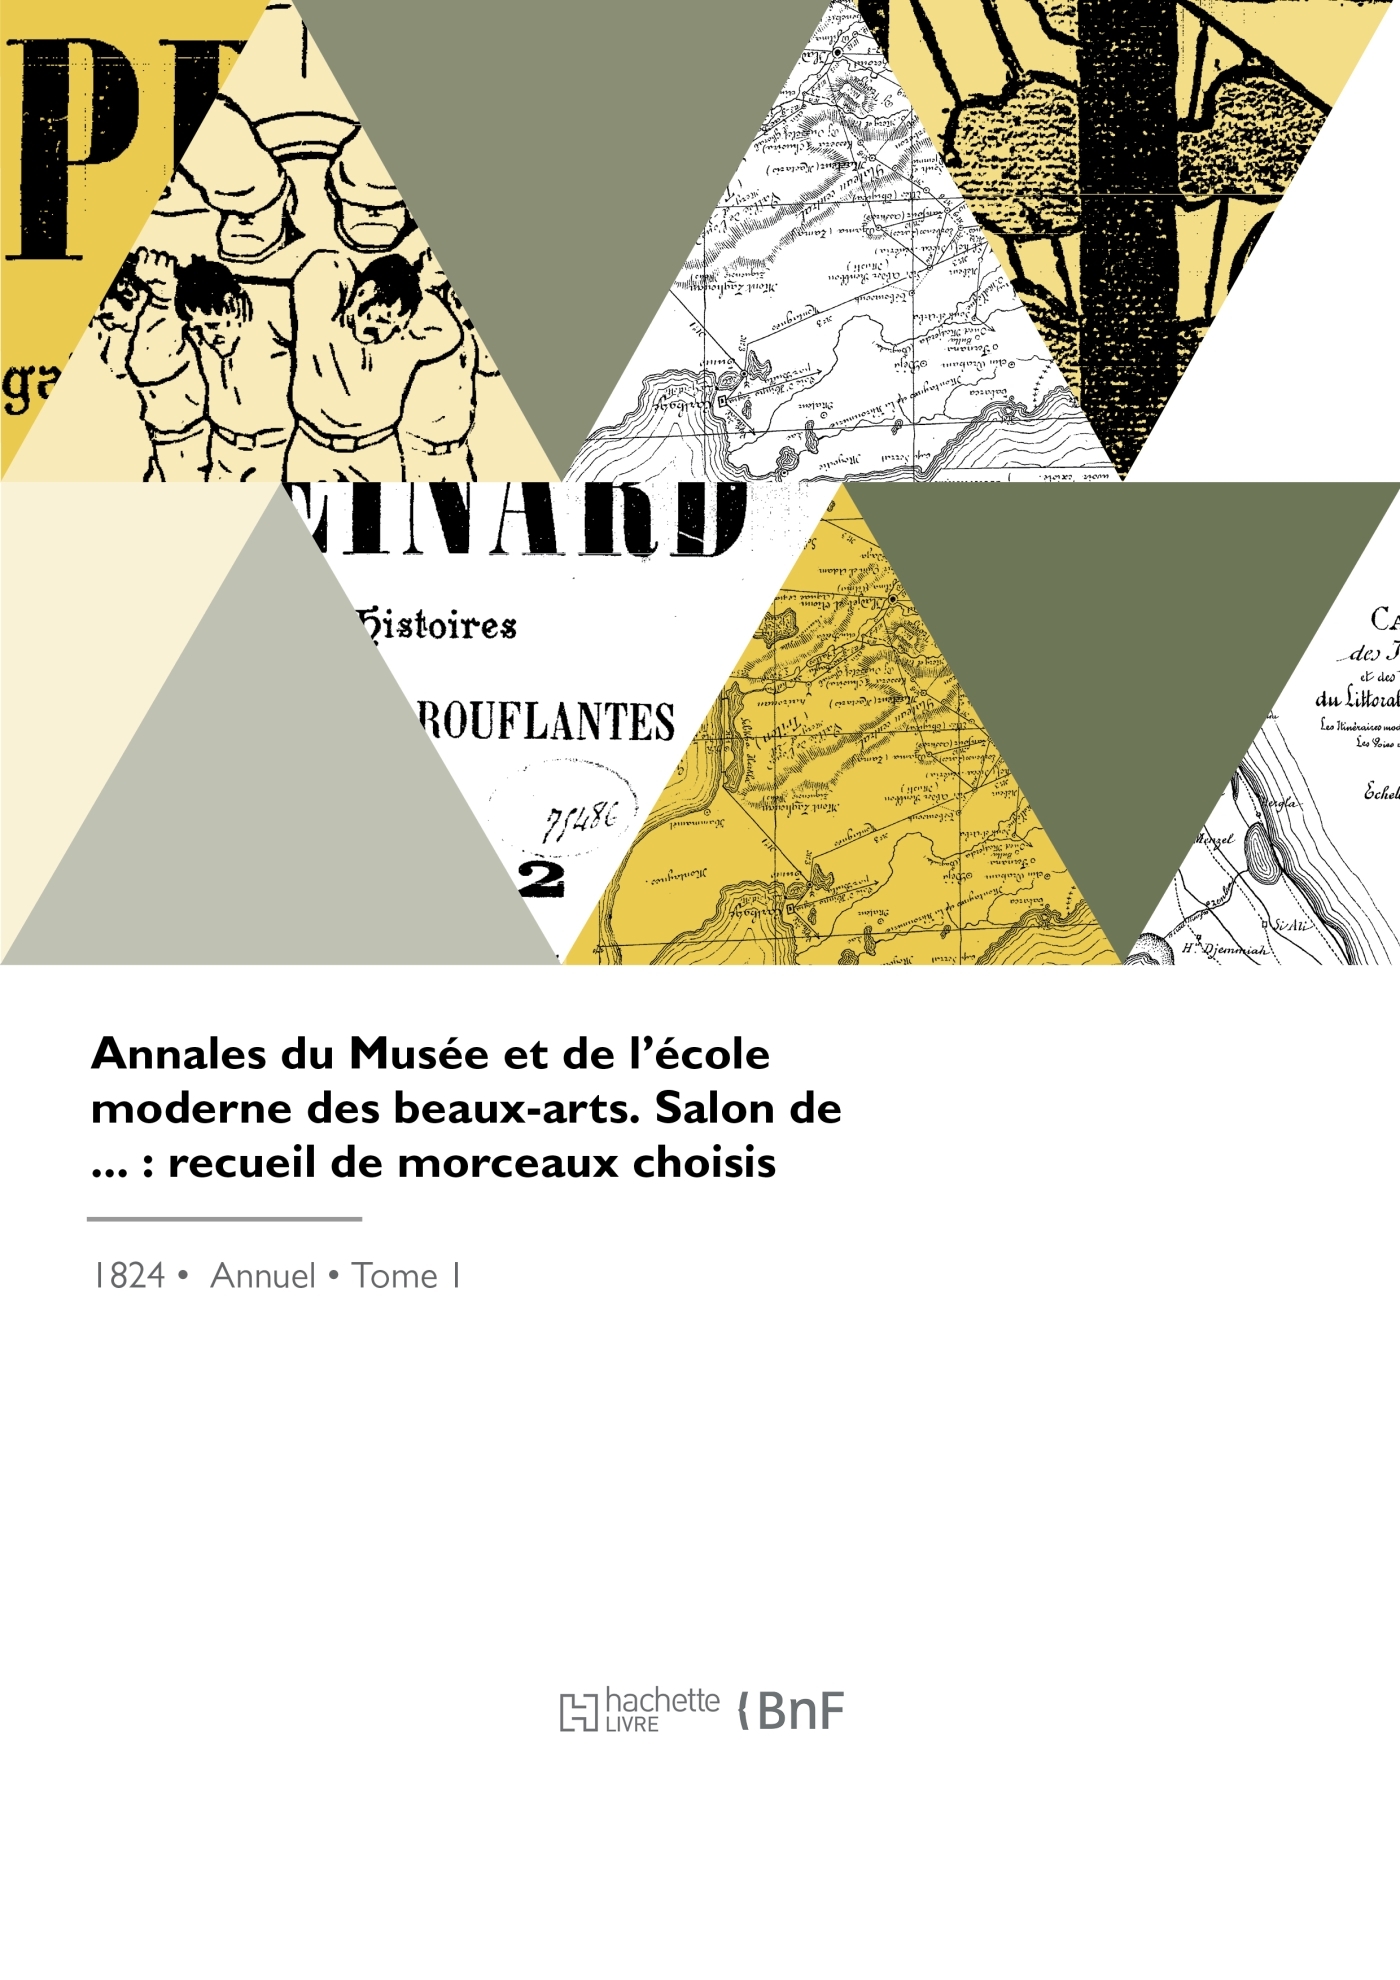 Annales du Musée et de l'école moderne des beaux-arts (9782329950365-front-cover)